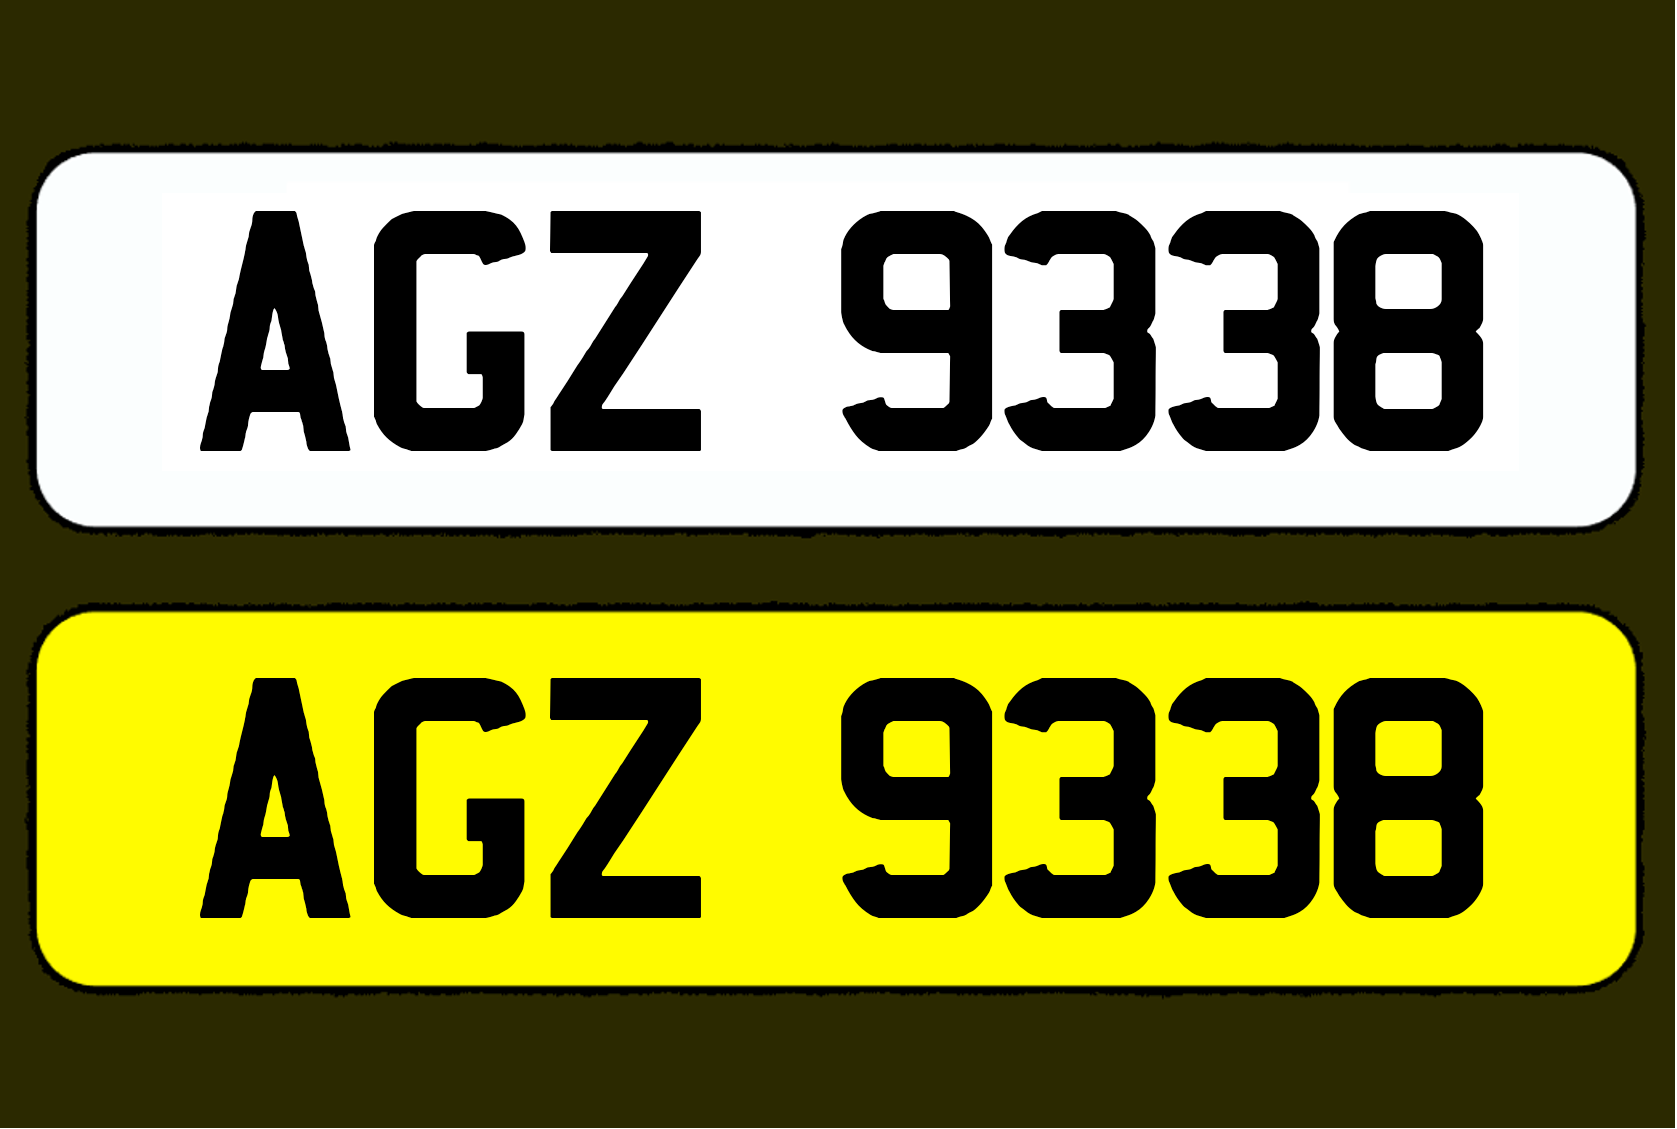 AGZ 9338